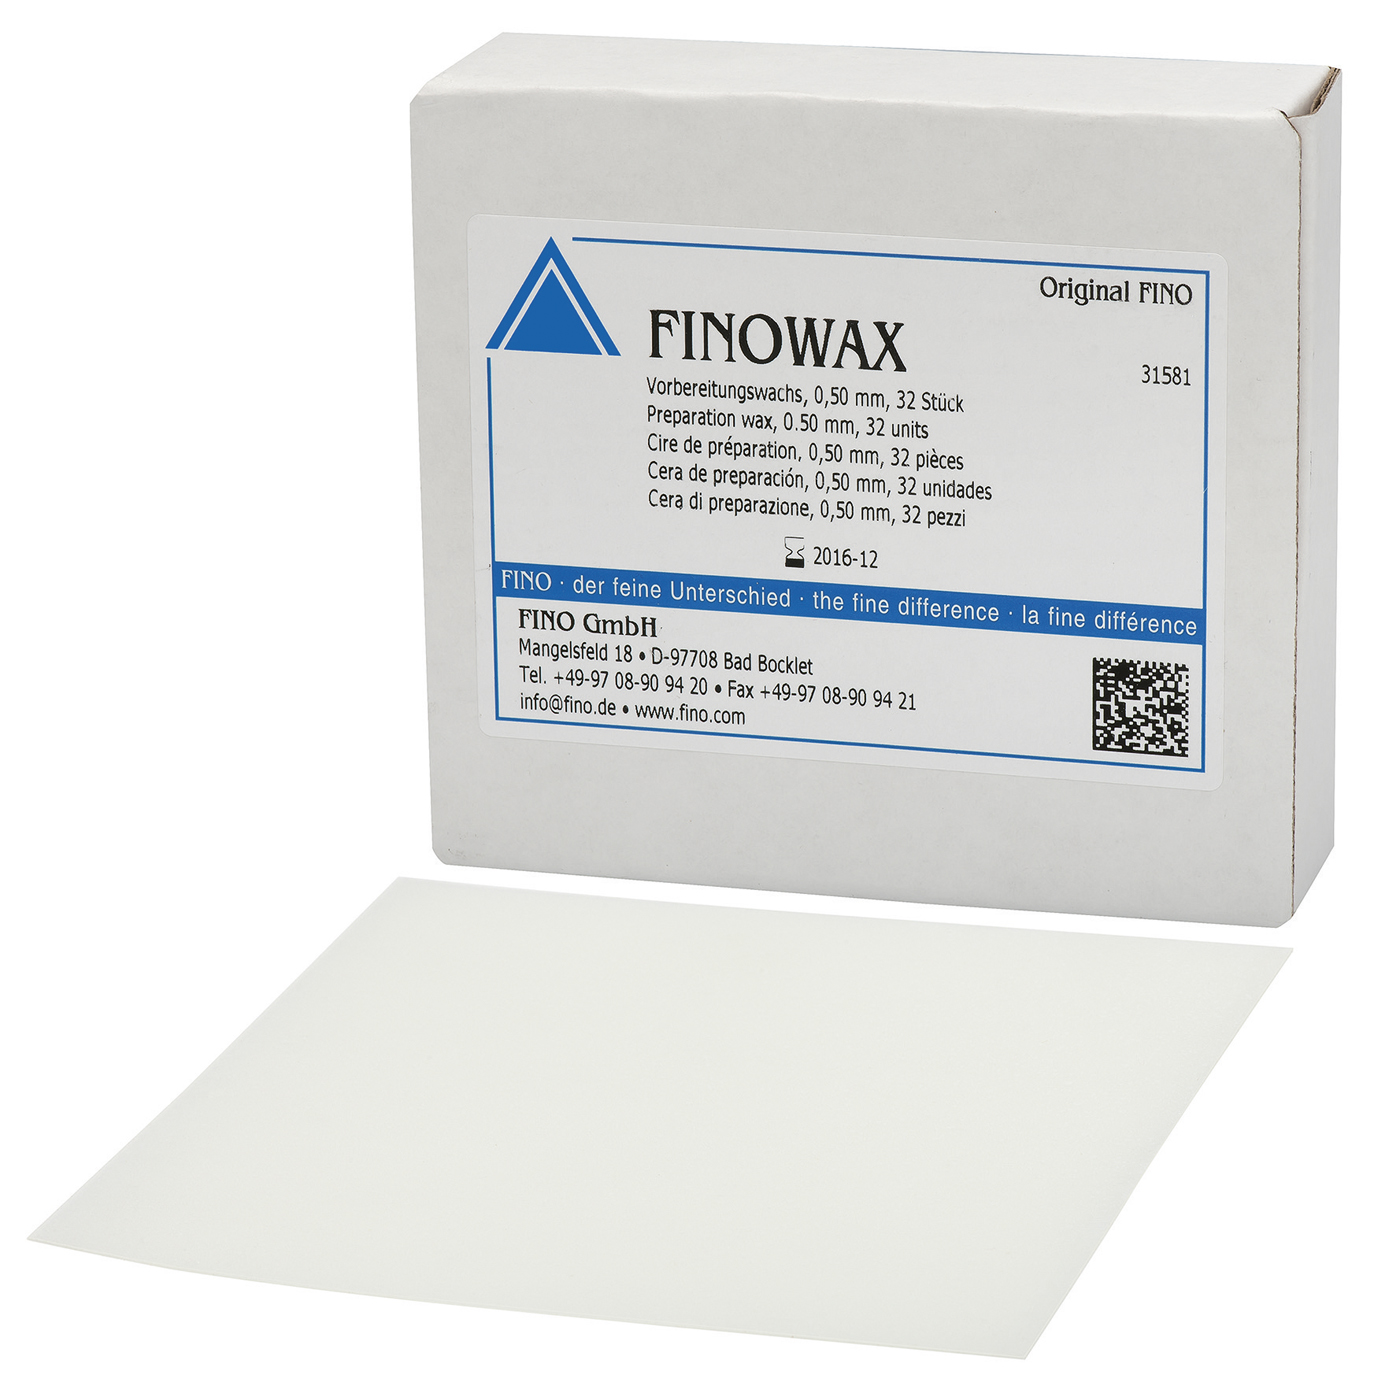 FINOWAX Vorbereitungswachs, 0,50 mm - 32 Stück